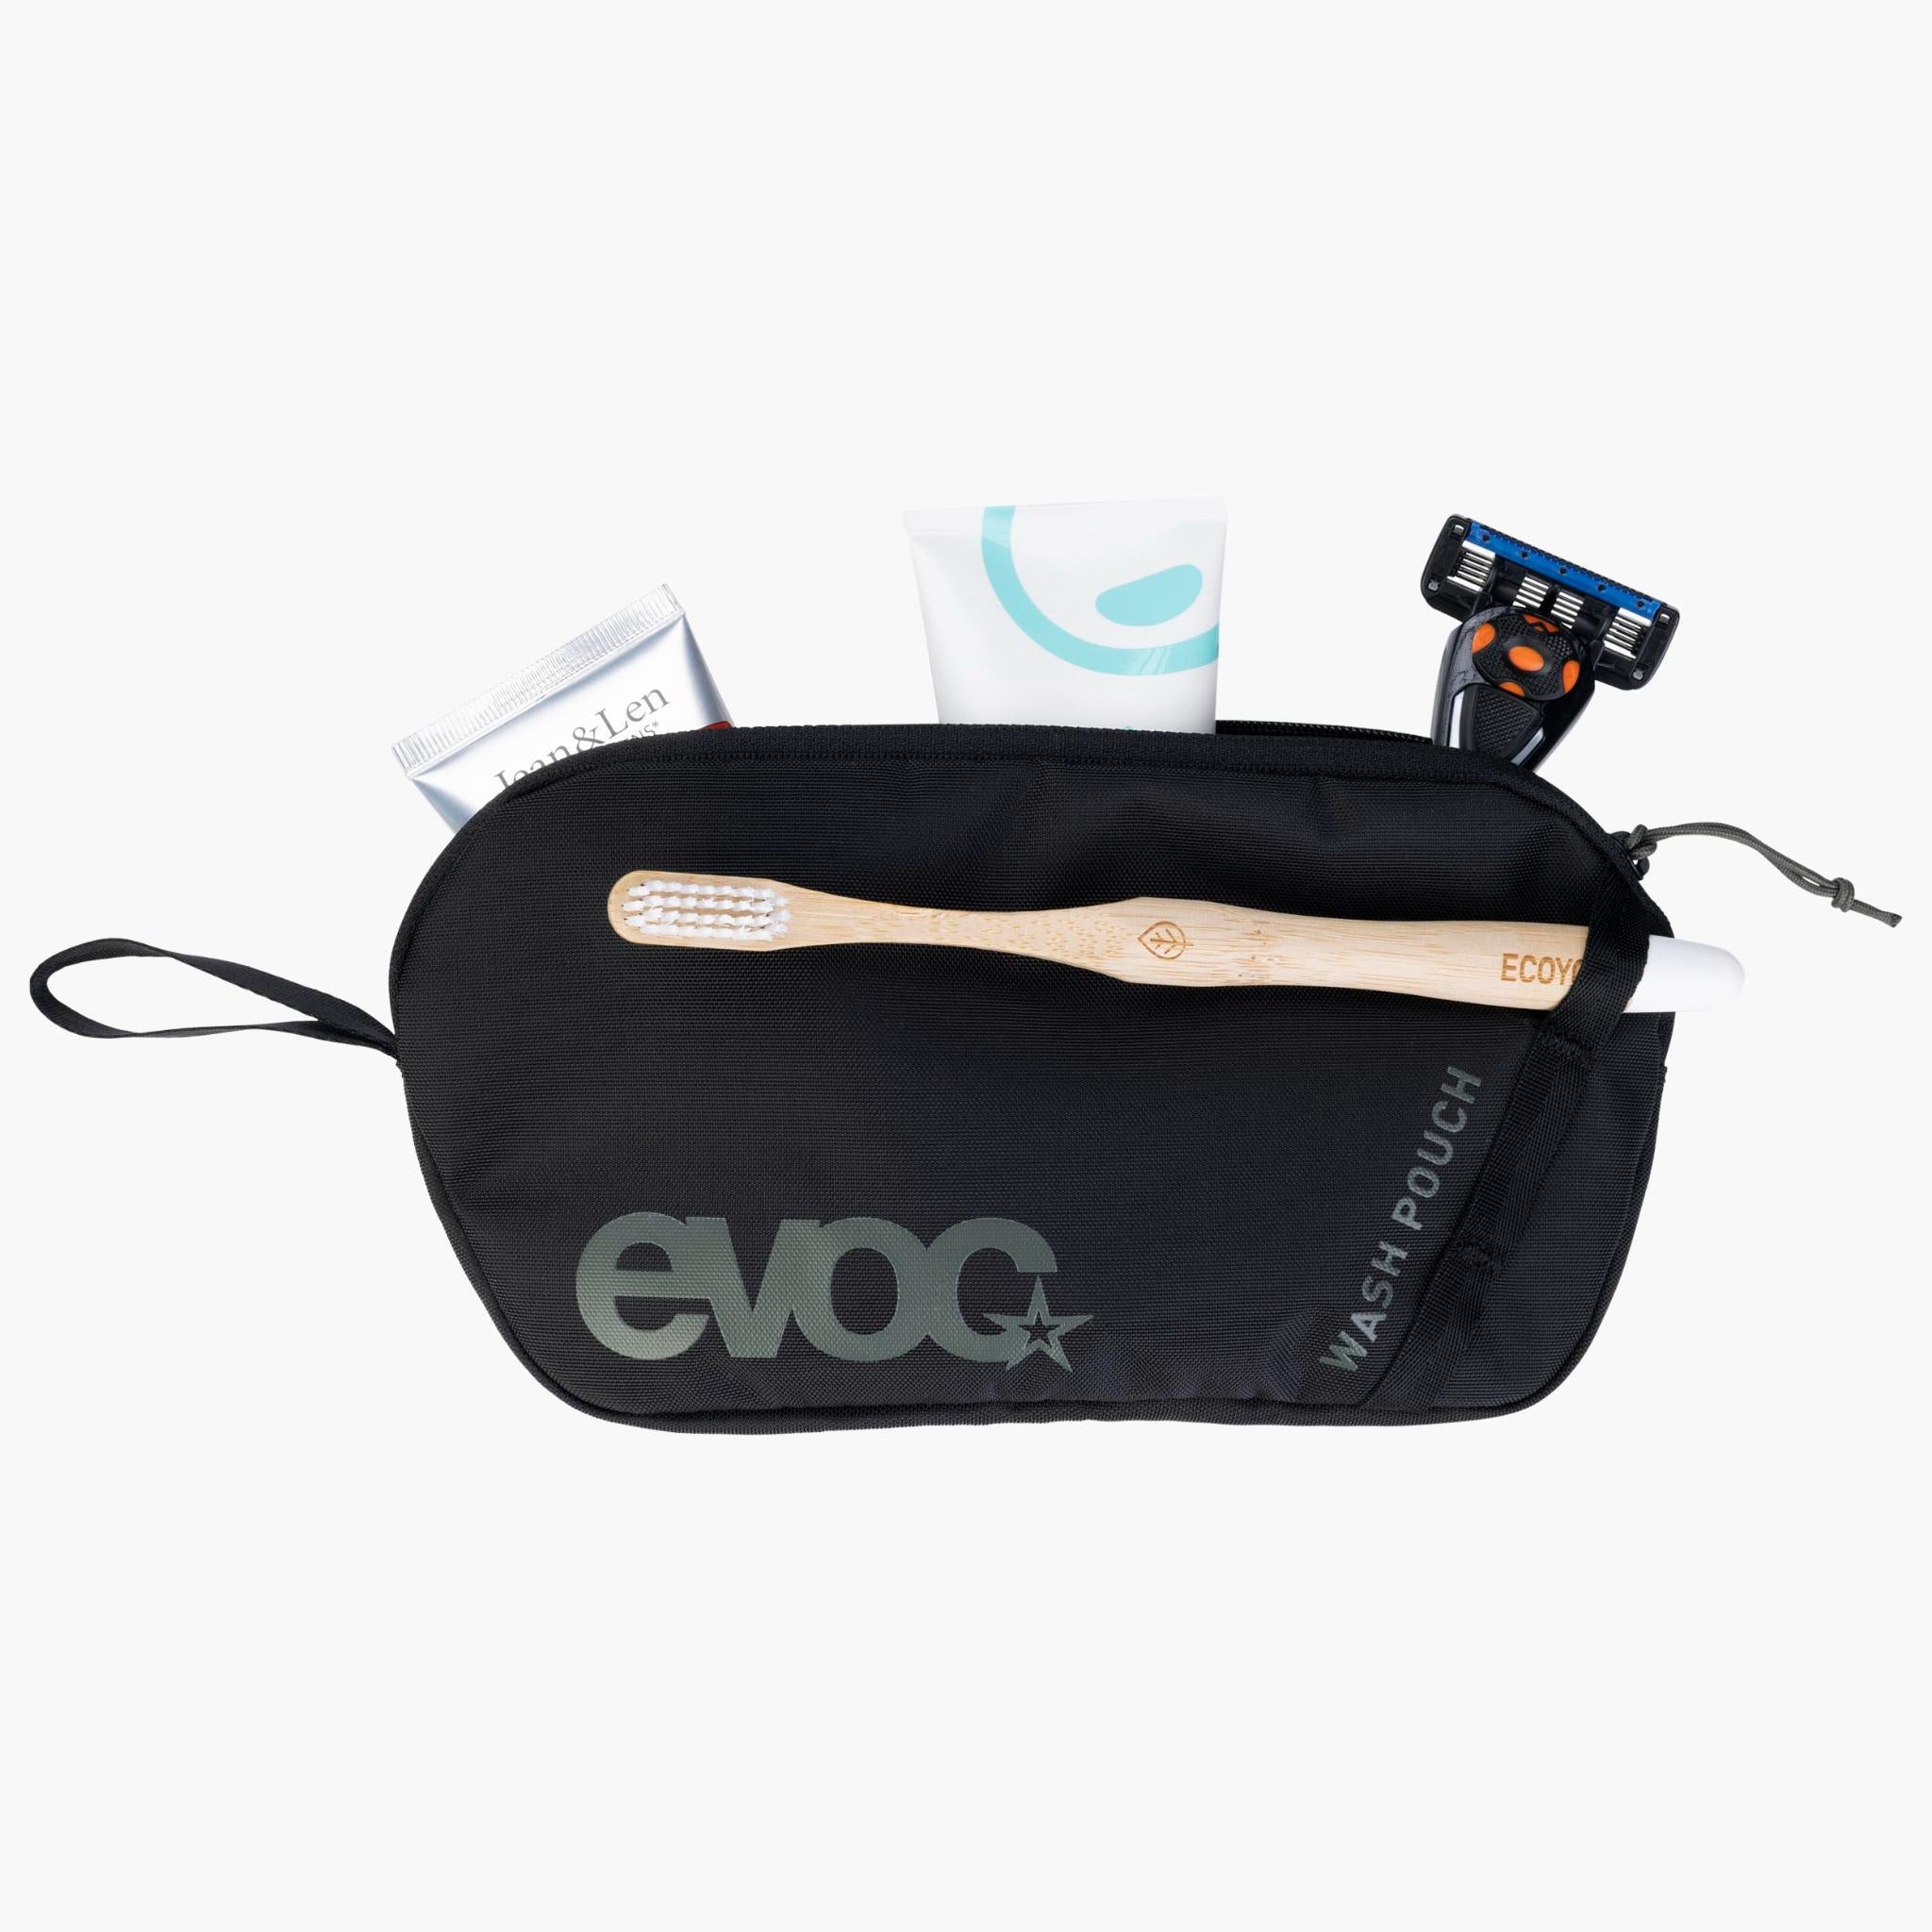 EVOC Explorer Pro 30 BACKPACK